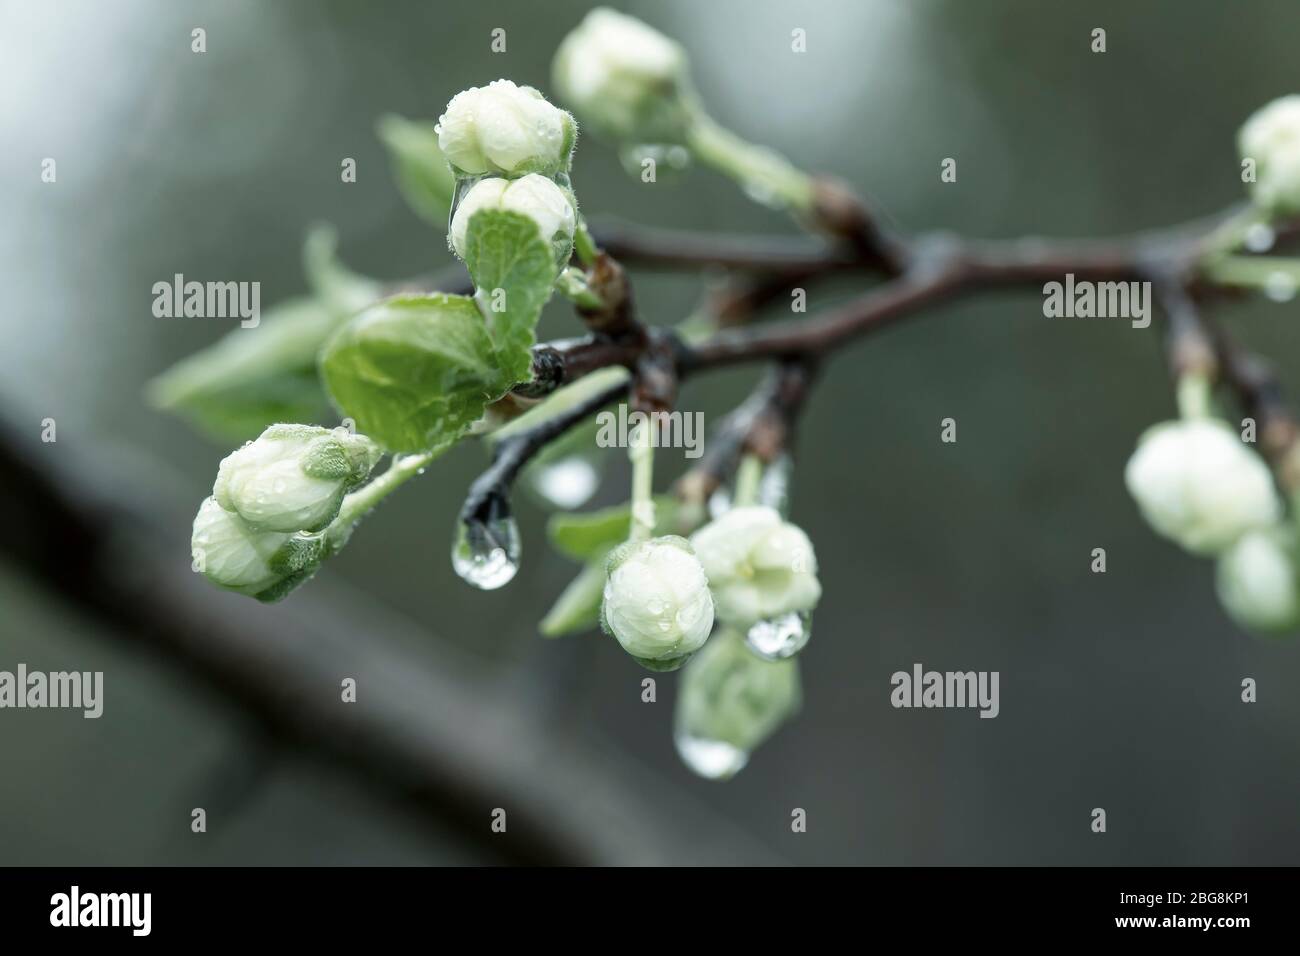 Schöne Knospen und Blüten eines Pflaumenbaums, Prunus domestica, mit transparenten Wassertropfen nach Regen. Gefiltertes Foto. Makro. Stockfoto